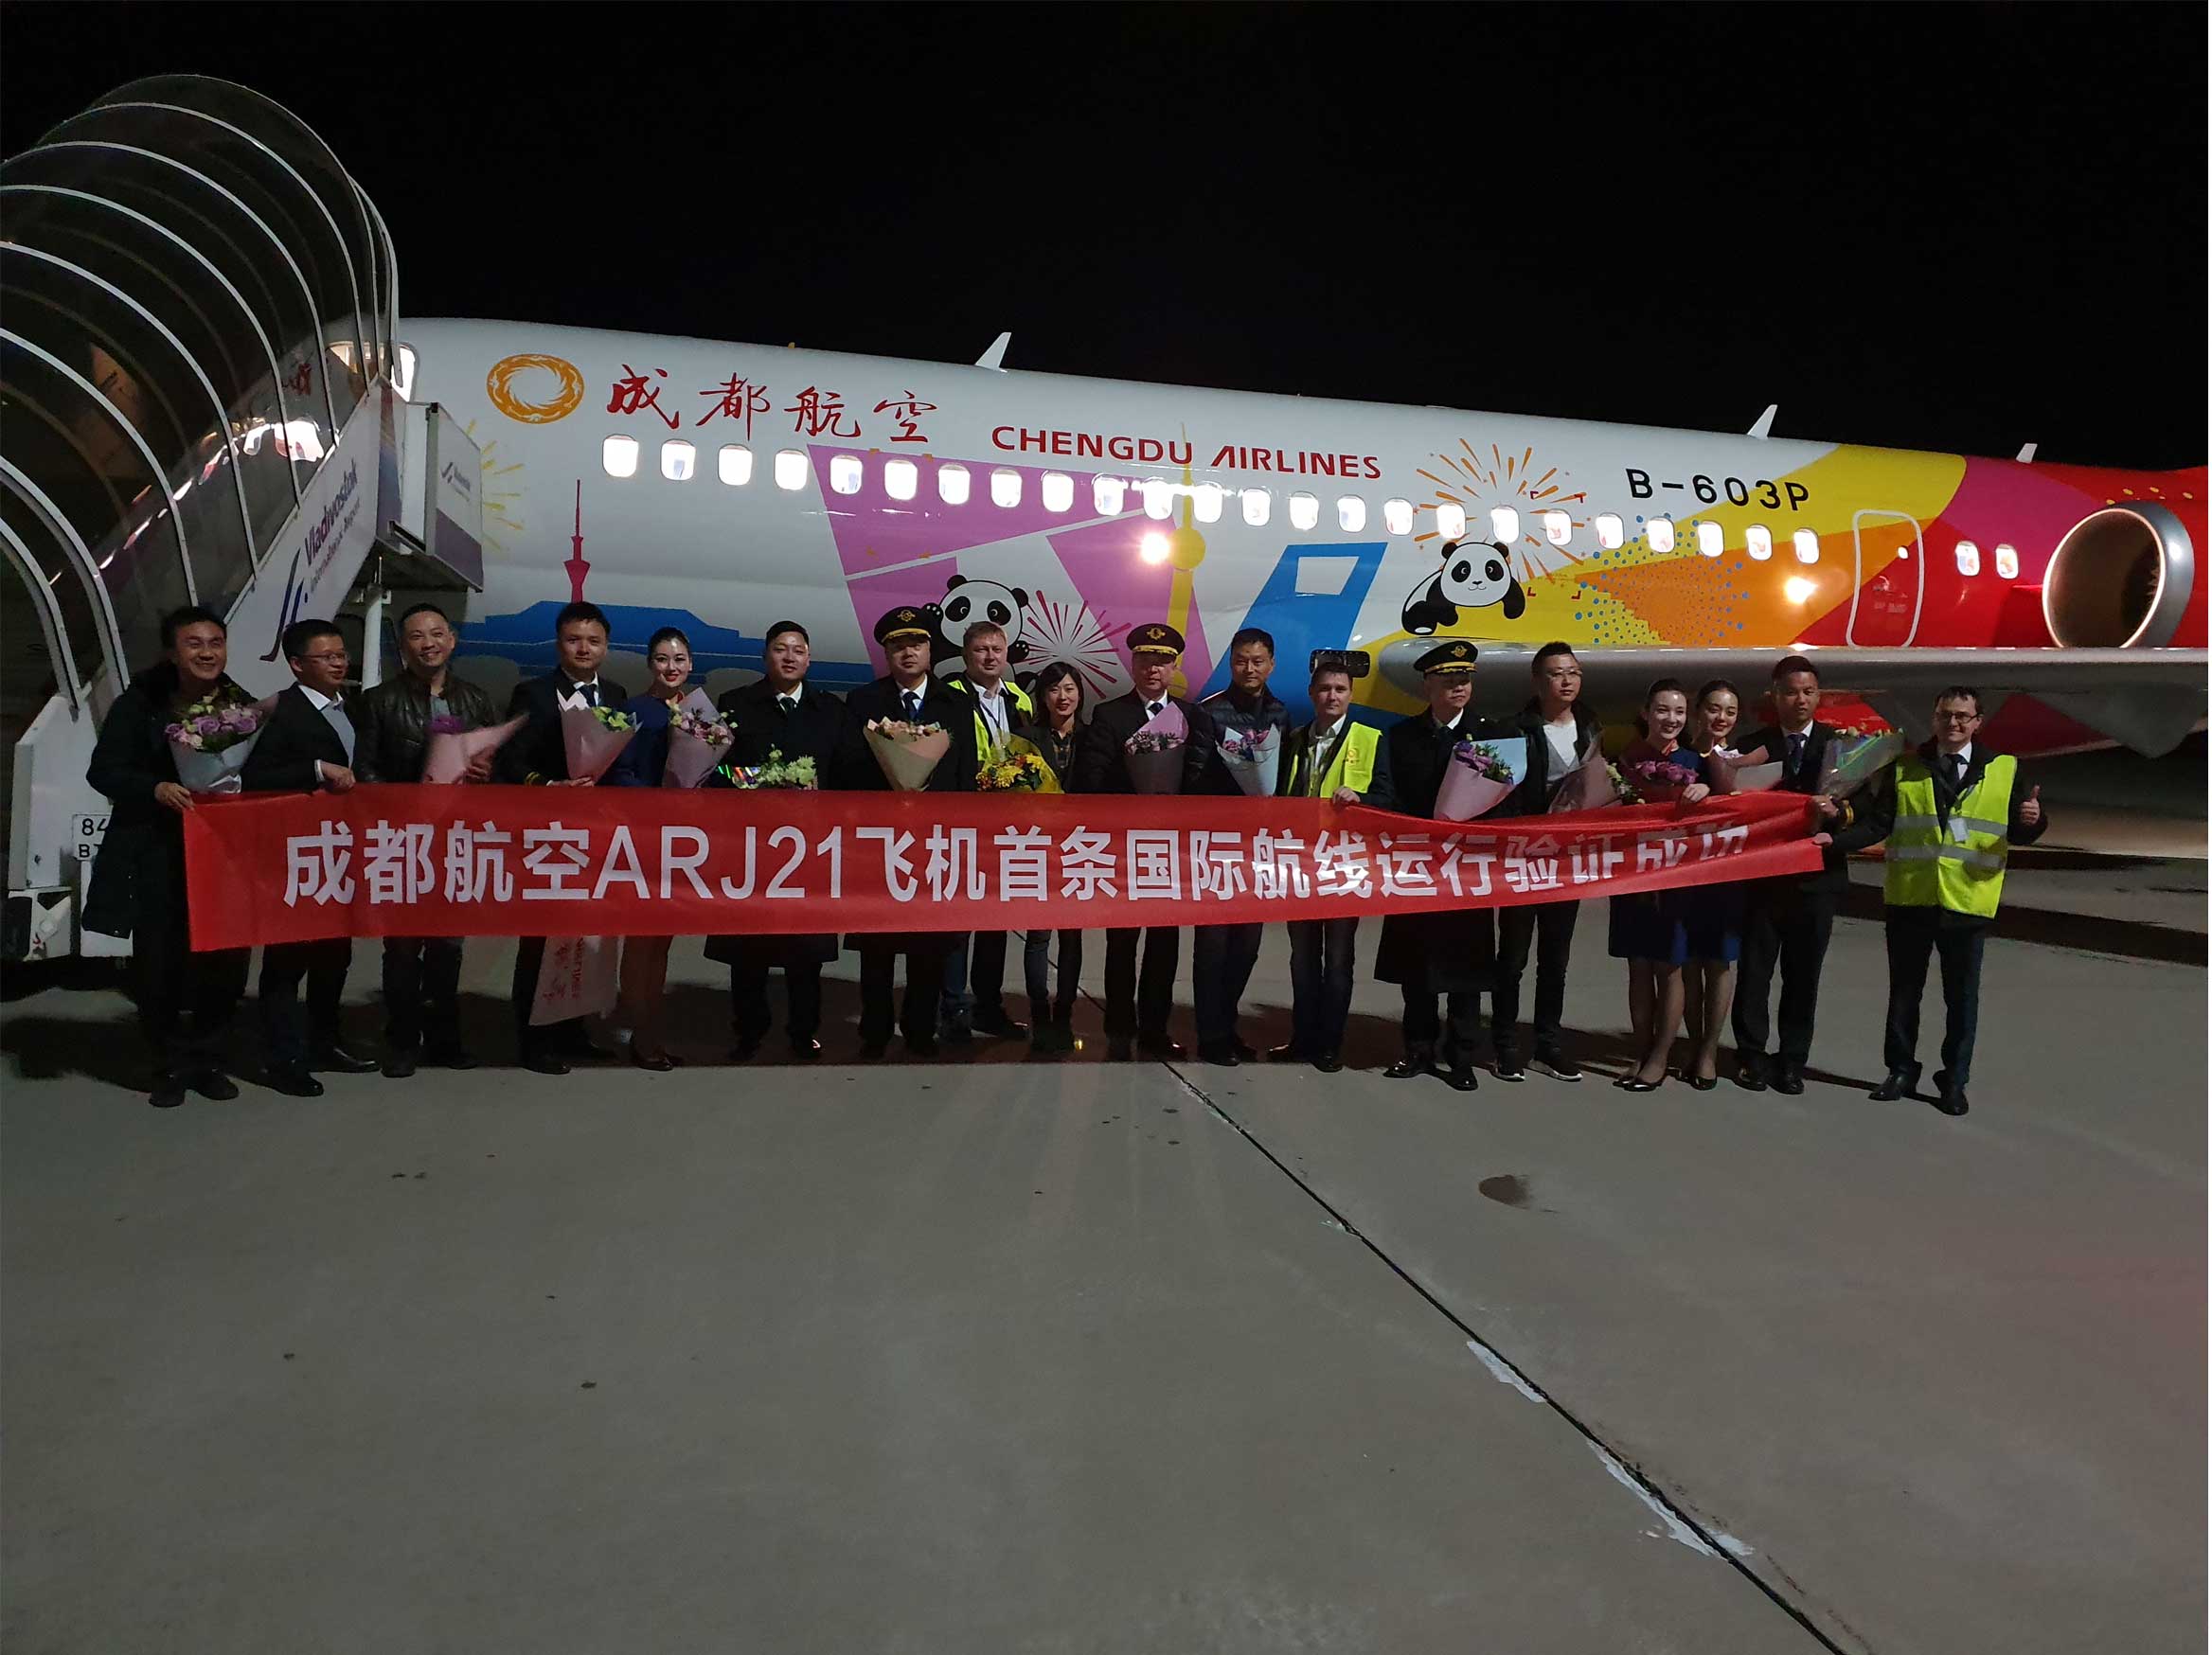 26 октября авиакомпания Chengdu Airlines совершила свой первый рейс во Владивосток